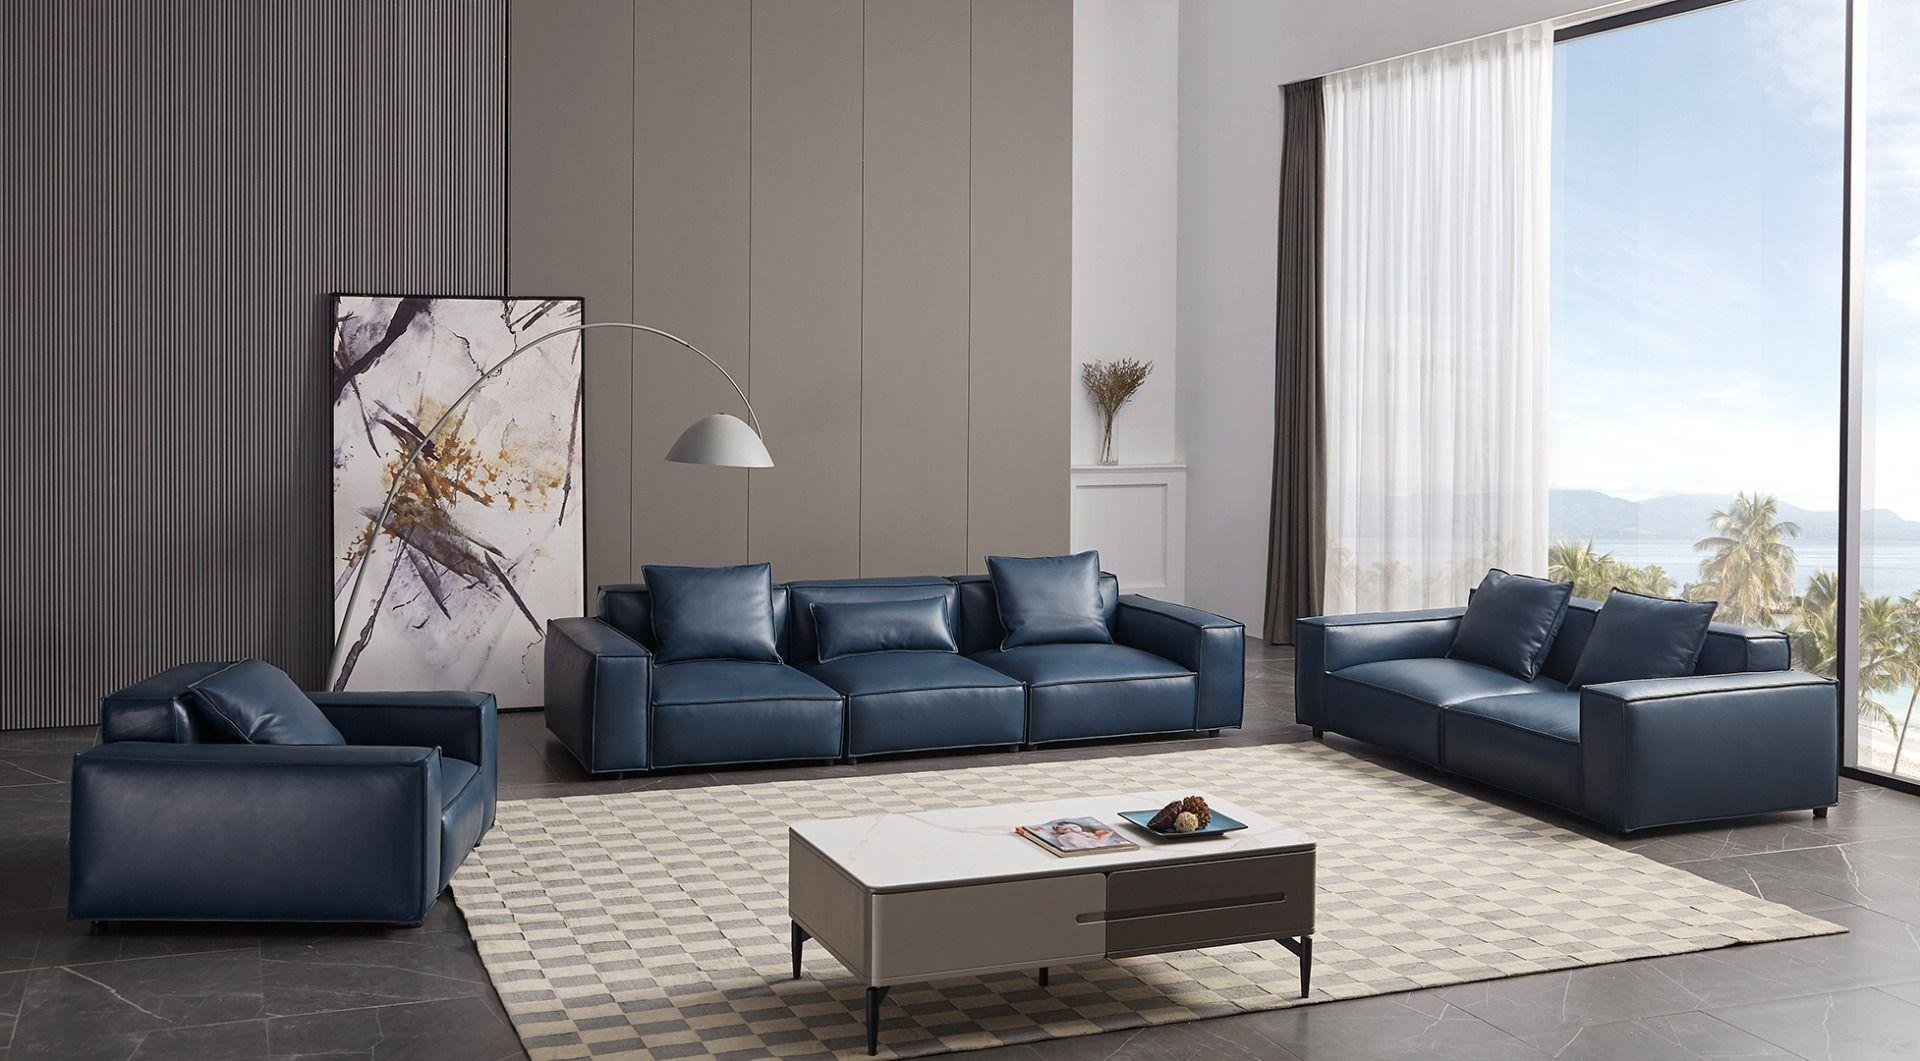 

                    
American Eagle Furniture EK8008-NB-SF Sofa Blue Leather Purchase 
